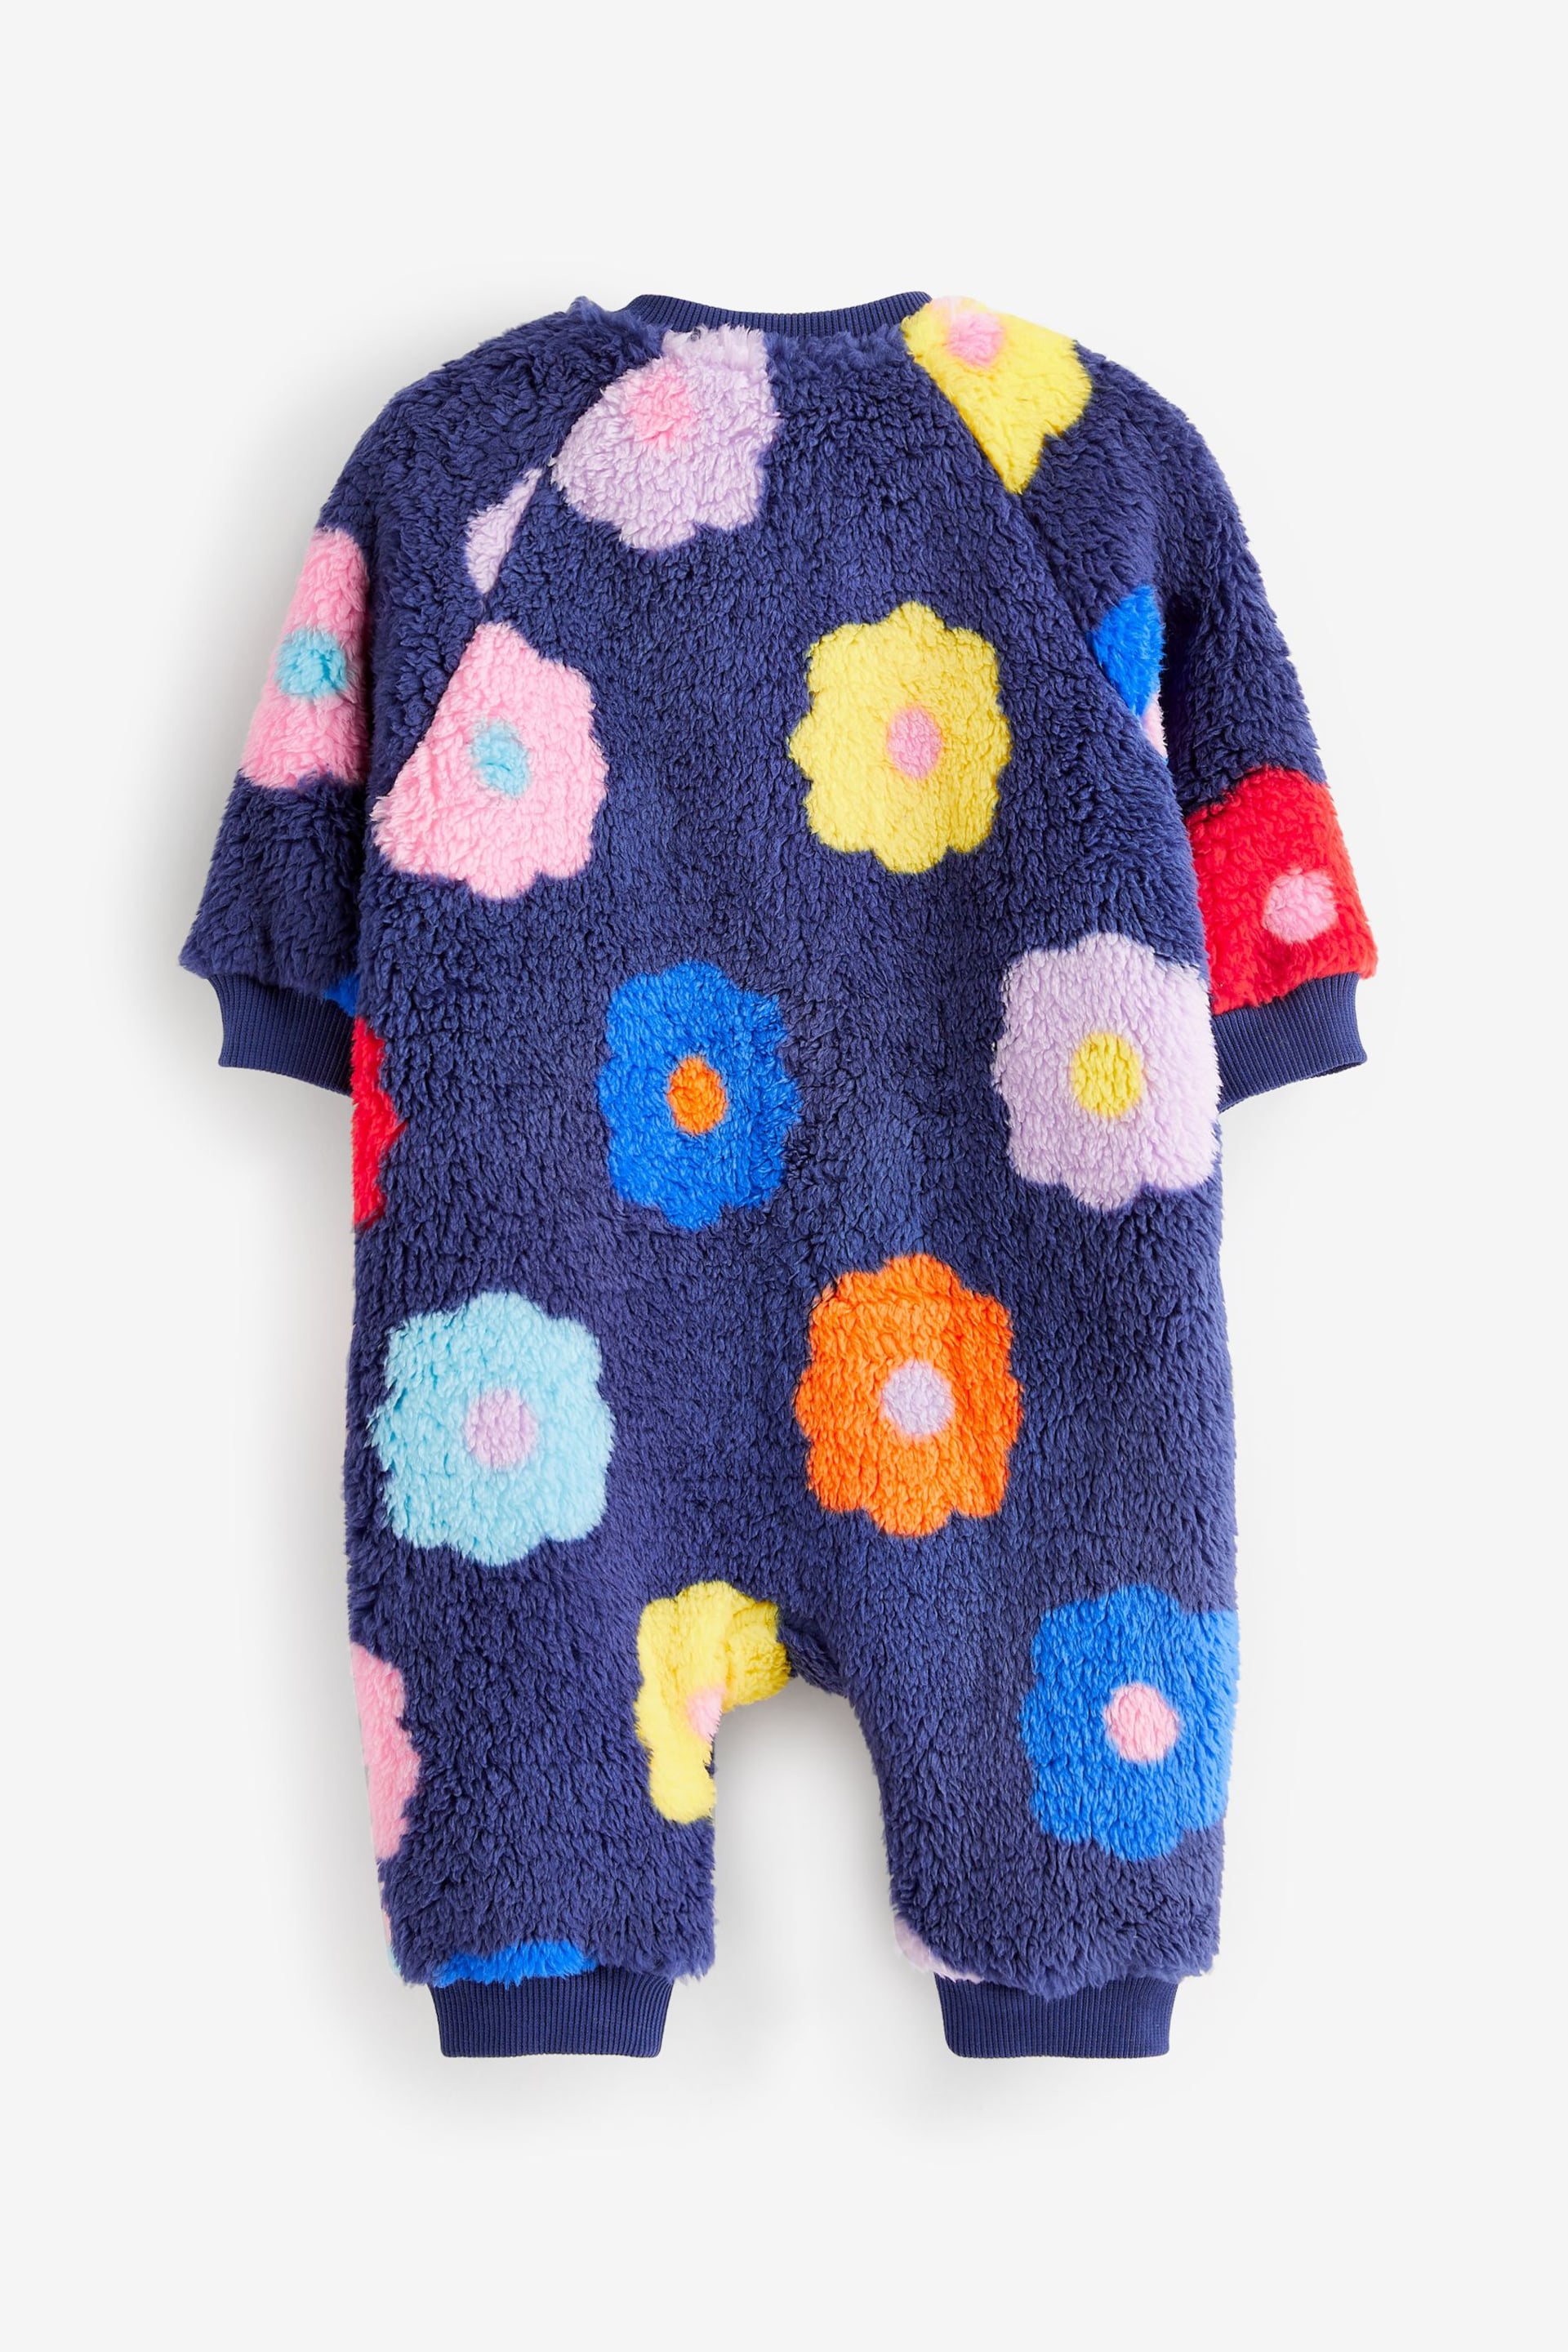 Navy Fleece Baby Sleepsuit - Image 6 of 7